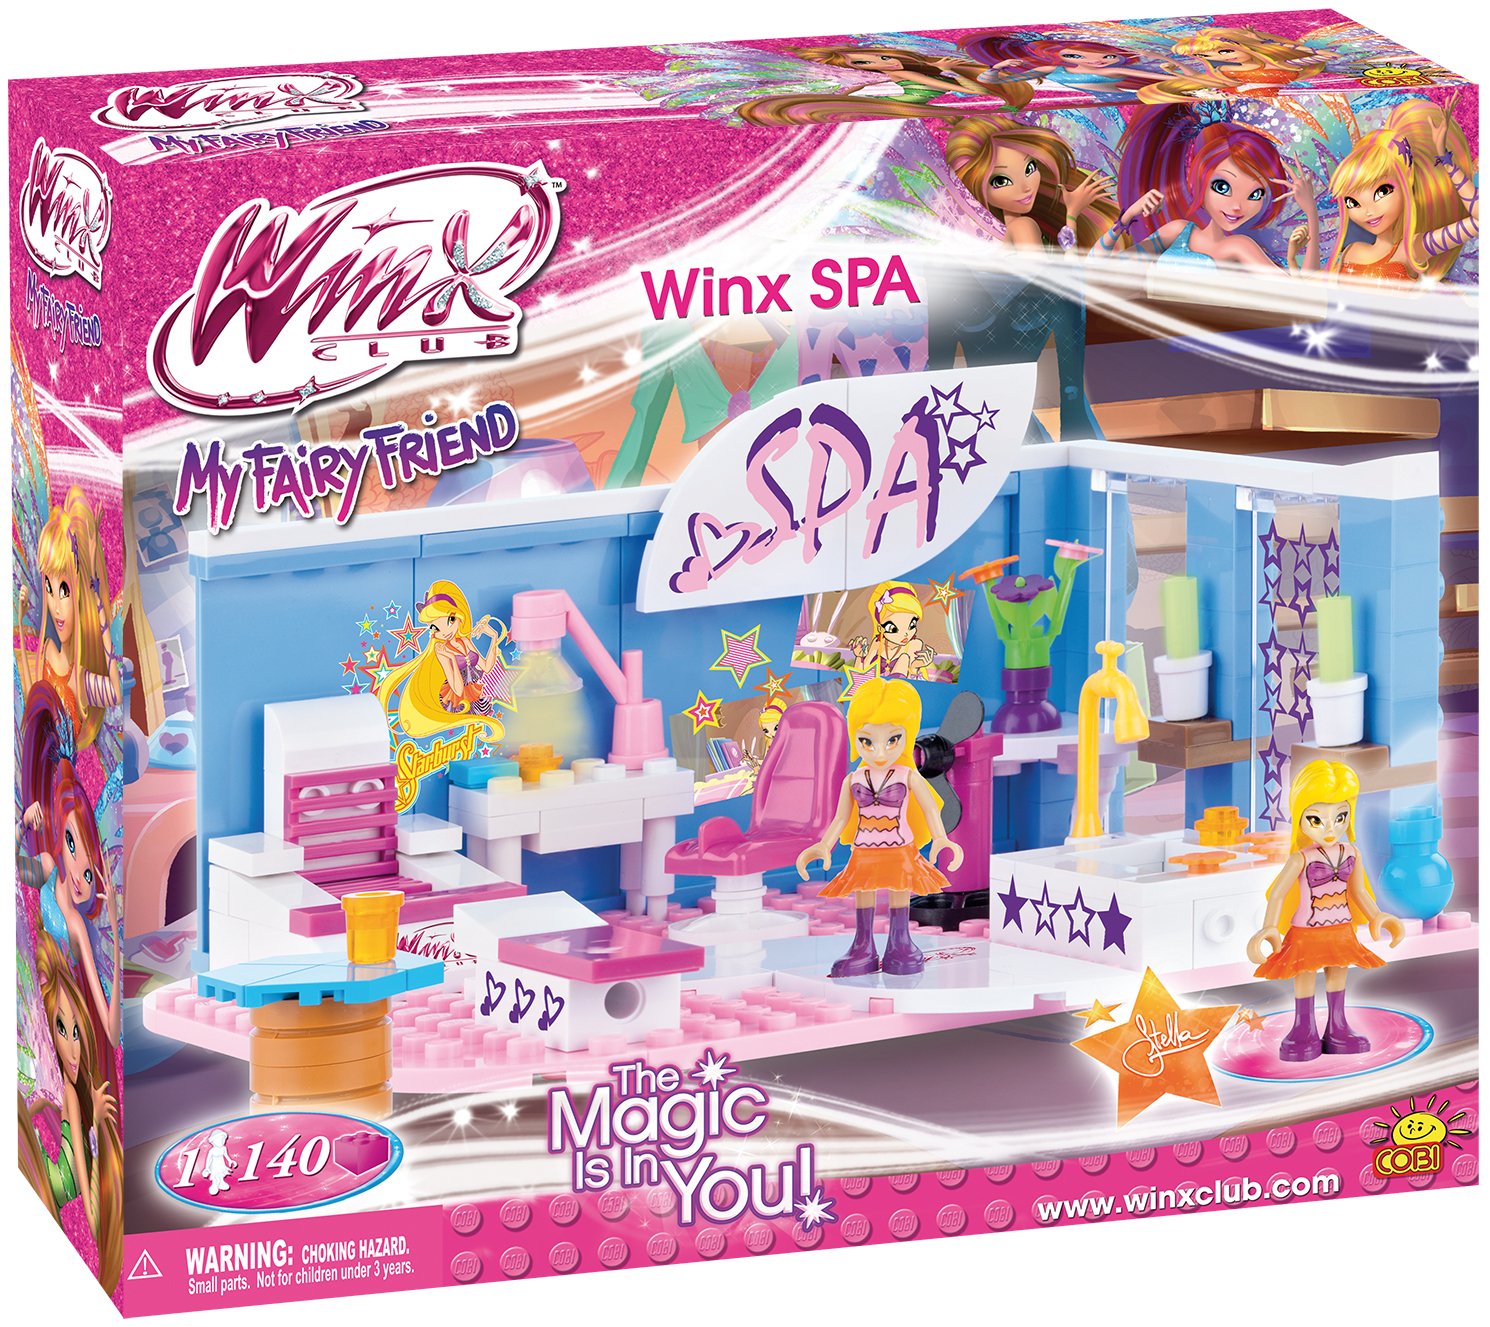 25144 - Winx SPA